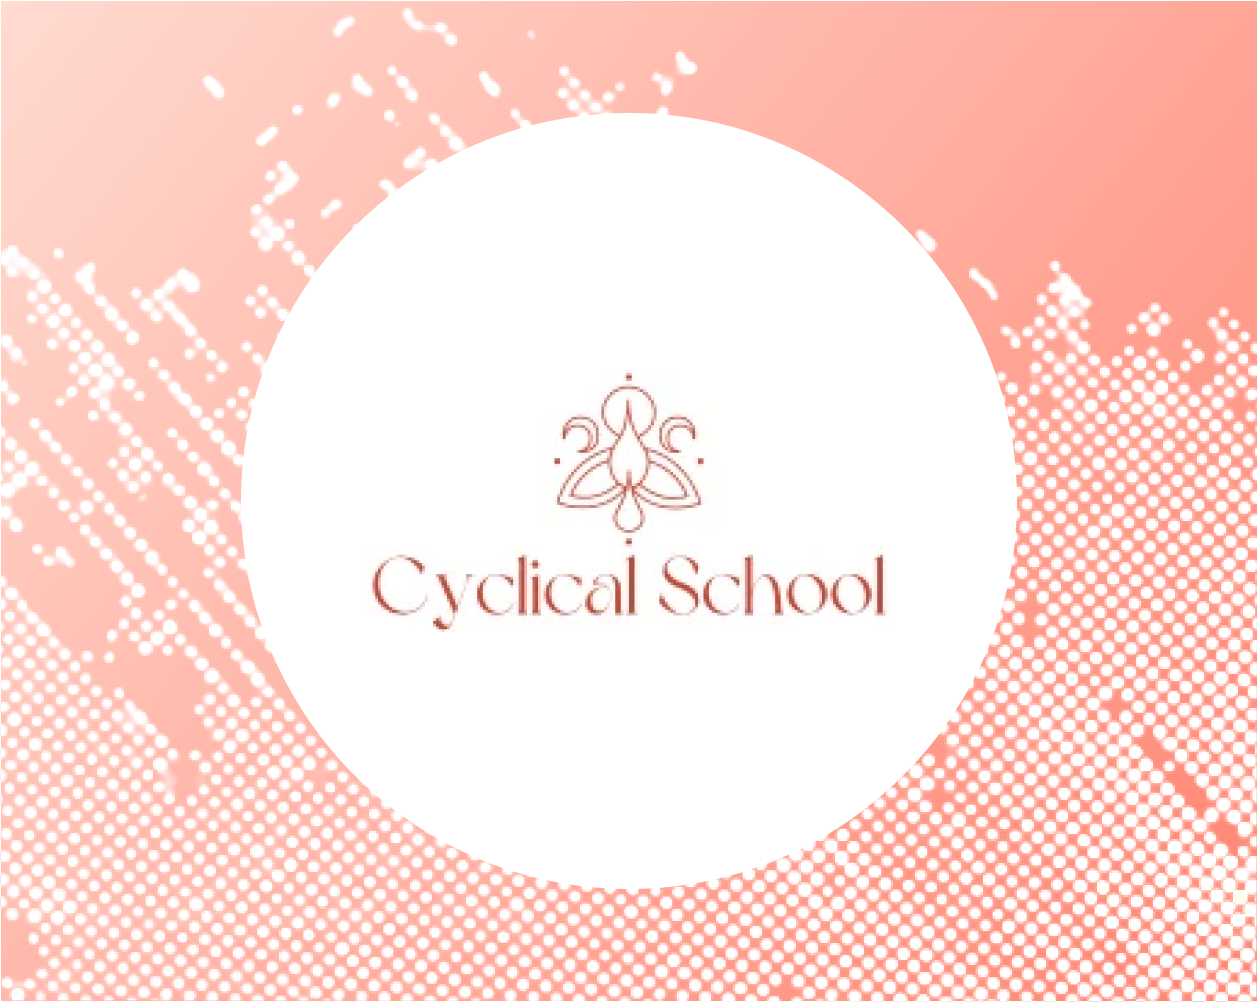 Cyclical School